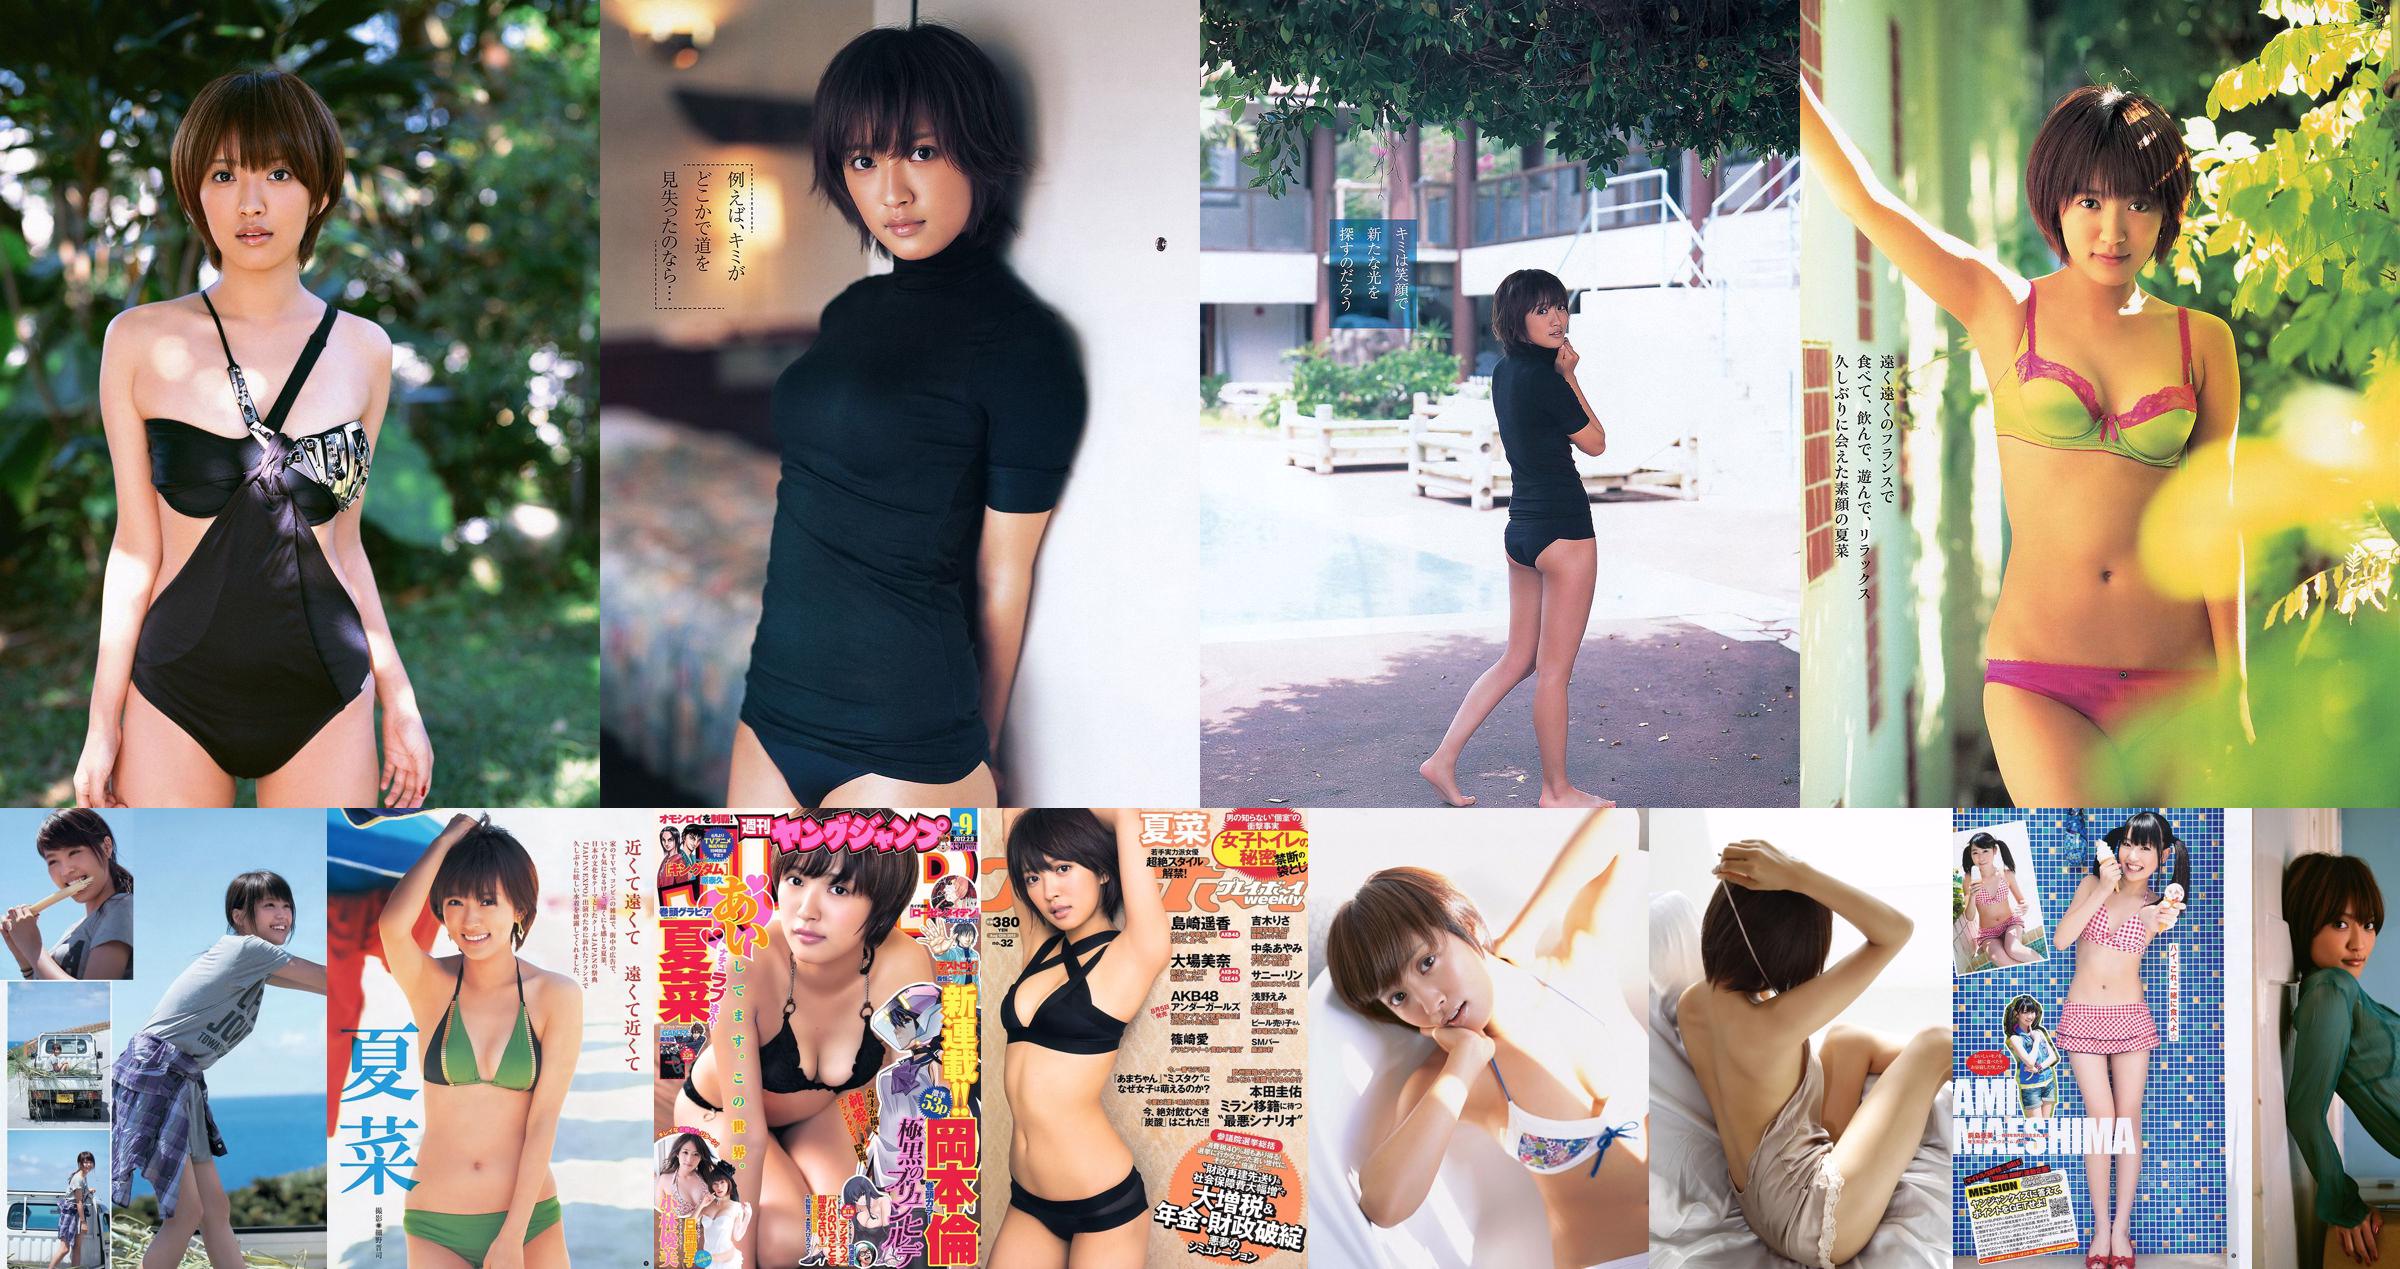 Natsuna SUPER ☆ GiRLS [Lompatan Muda Mingguan] Majalah Foto No.33 2011 No.0902c7 Halaman 1